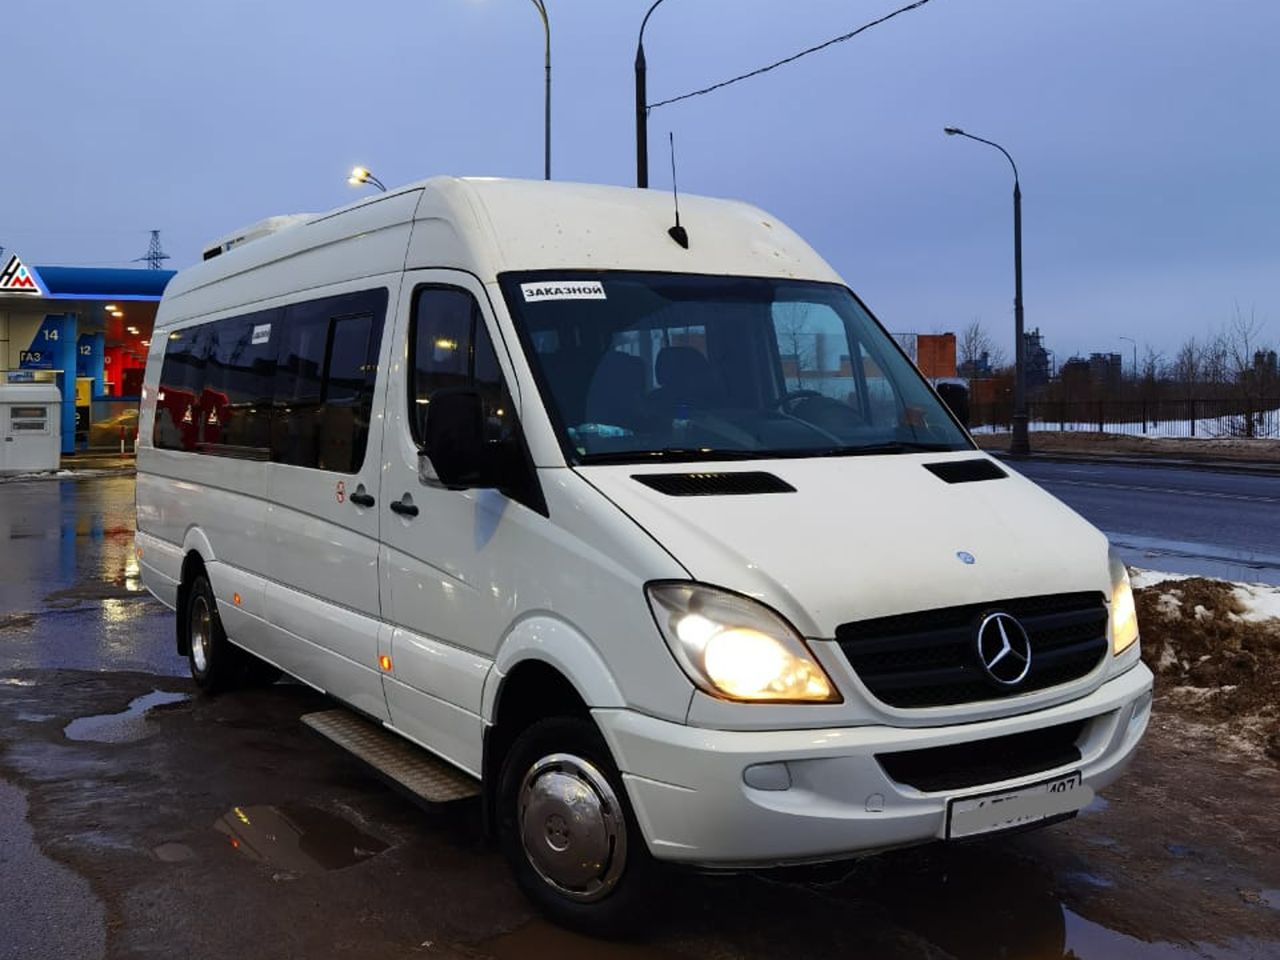 Обзорная экскурсия по Москве на микроавтобусе | Цена 25000₽, отзывы, описание экскурсии